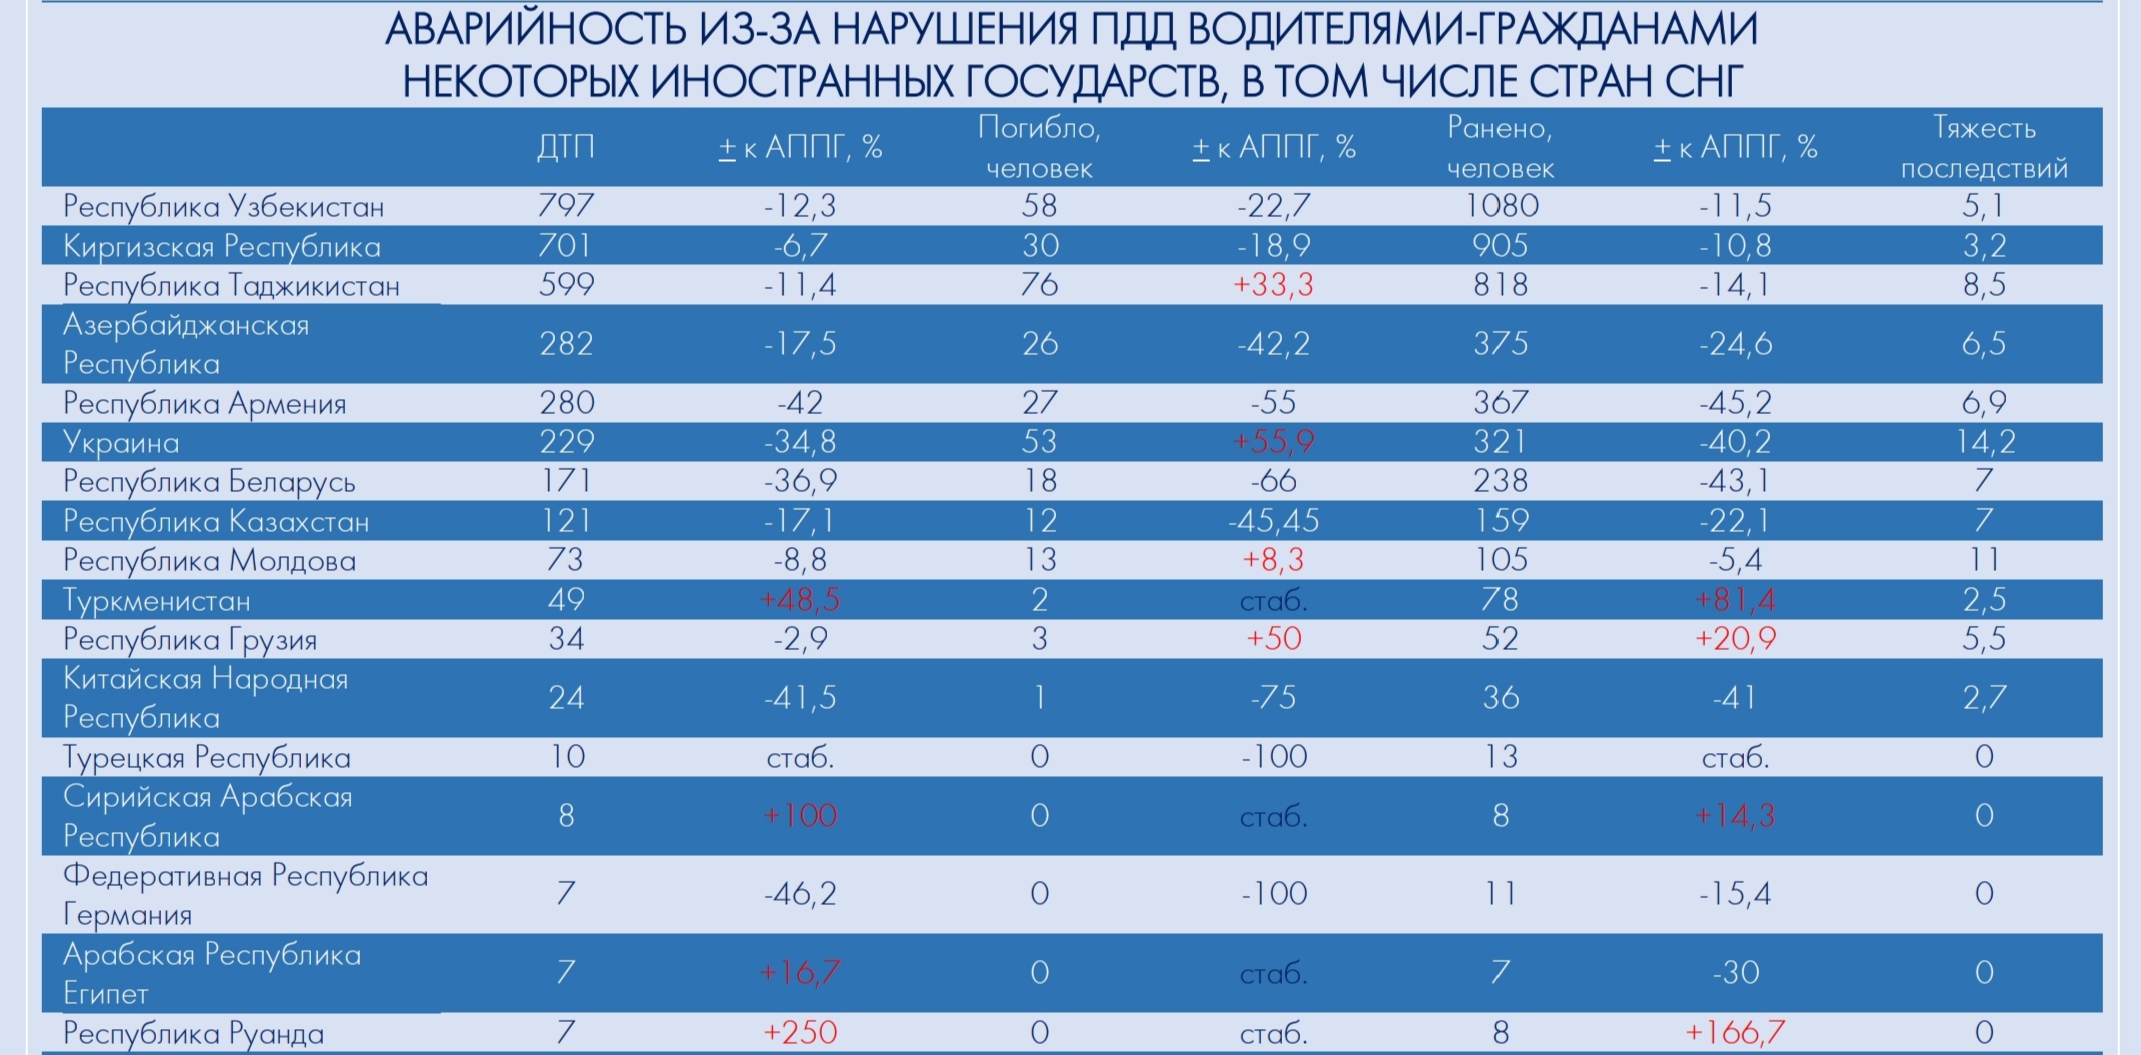 Узбекистан занял первое место в рейтинге виновных в ДТП иностранцев в России